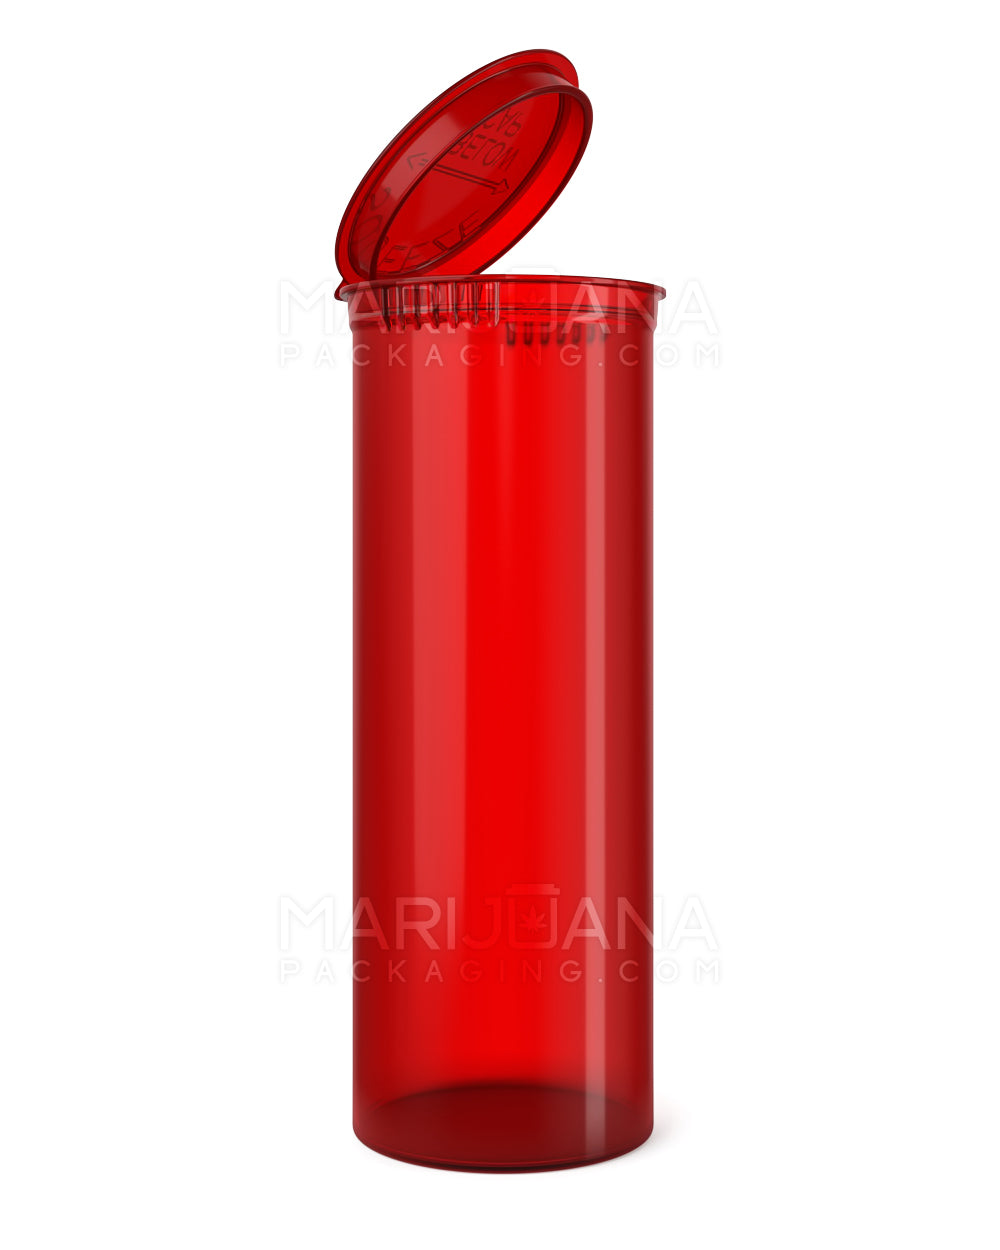 Child Resistant | Transparent Red Pop Top Bottles | 60dr - 14g - 75 Count - 1